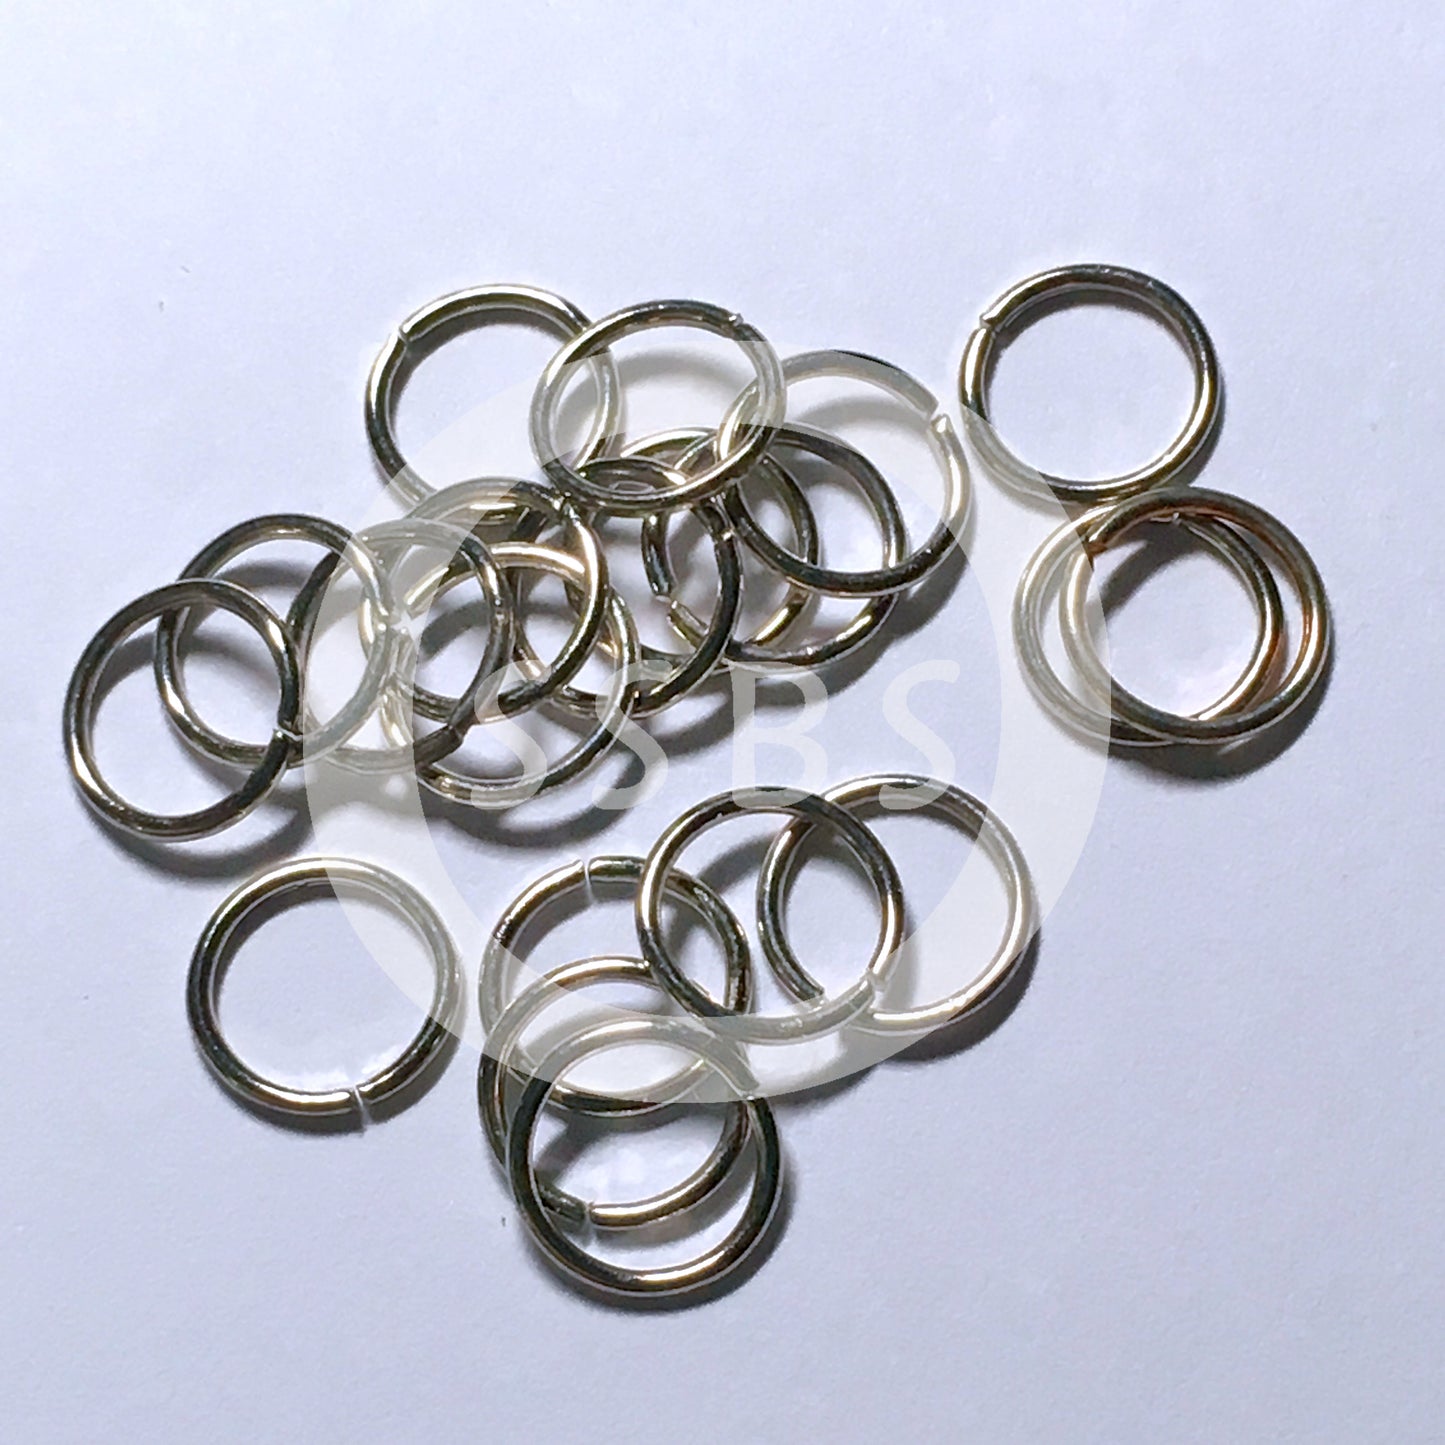 8 mm 20-Gauge Stainless Steel Unsoldered .8 mm Split Jump Rings - 10 or 20 Rings